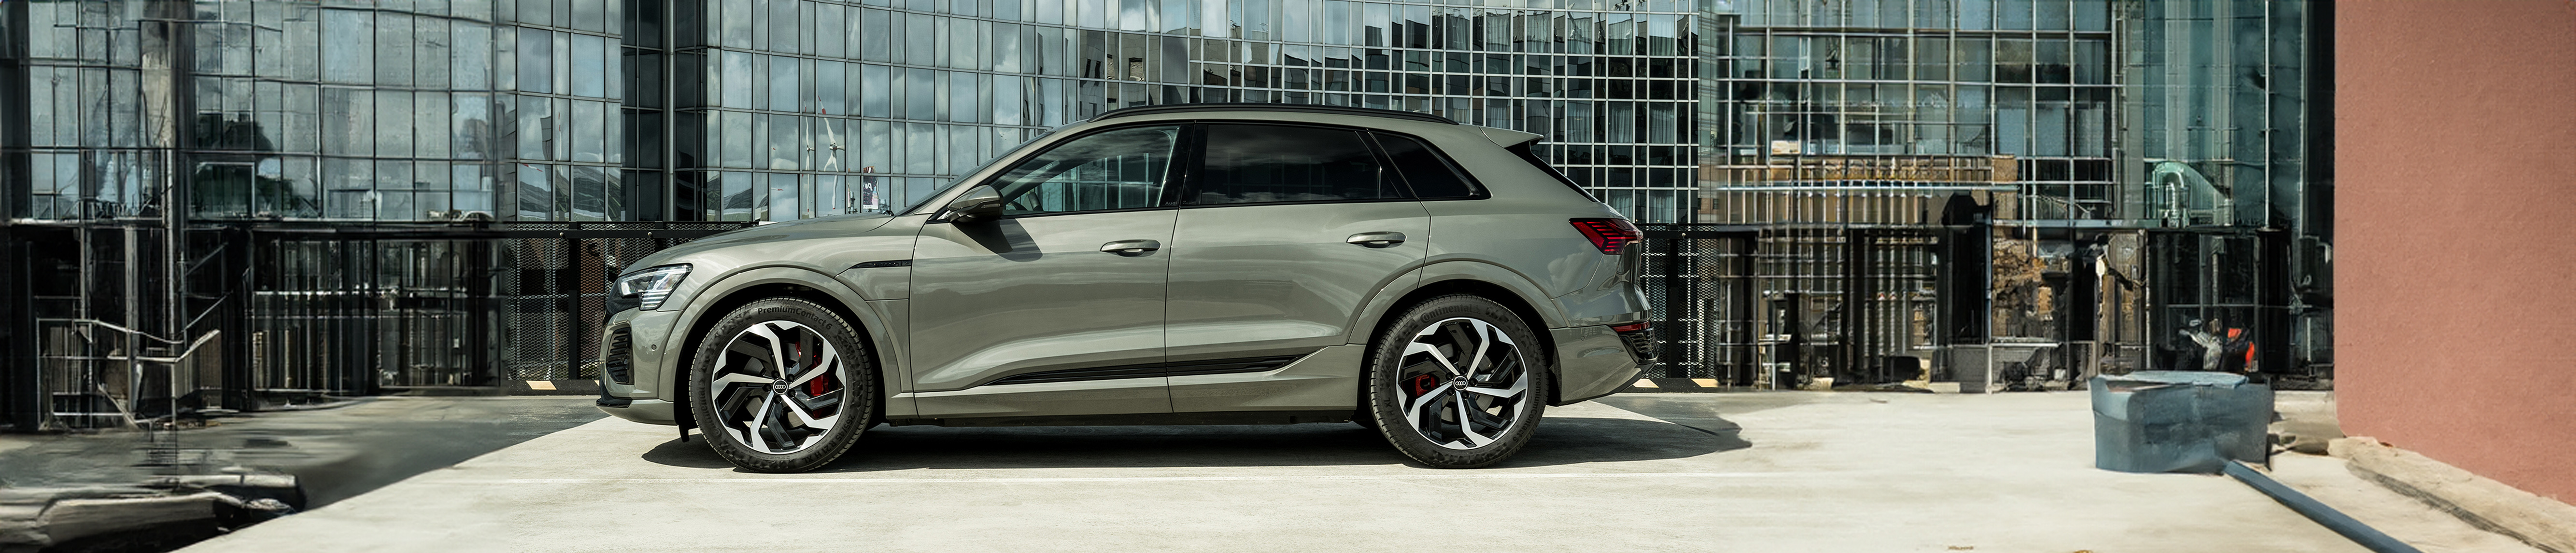 De nieuwe Audi Q8 biedt alles waar Audi bekend om staat: een expressief design, toonaangevende techniek en de kunst om ook de meest veeleisende mensen tevreden te stellen. 